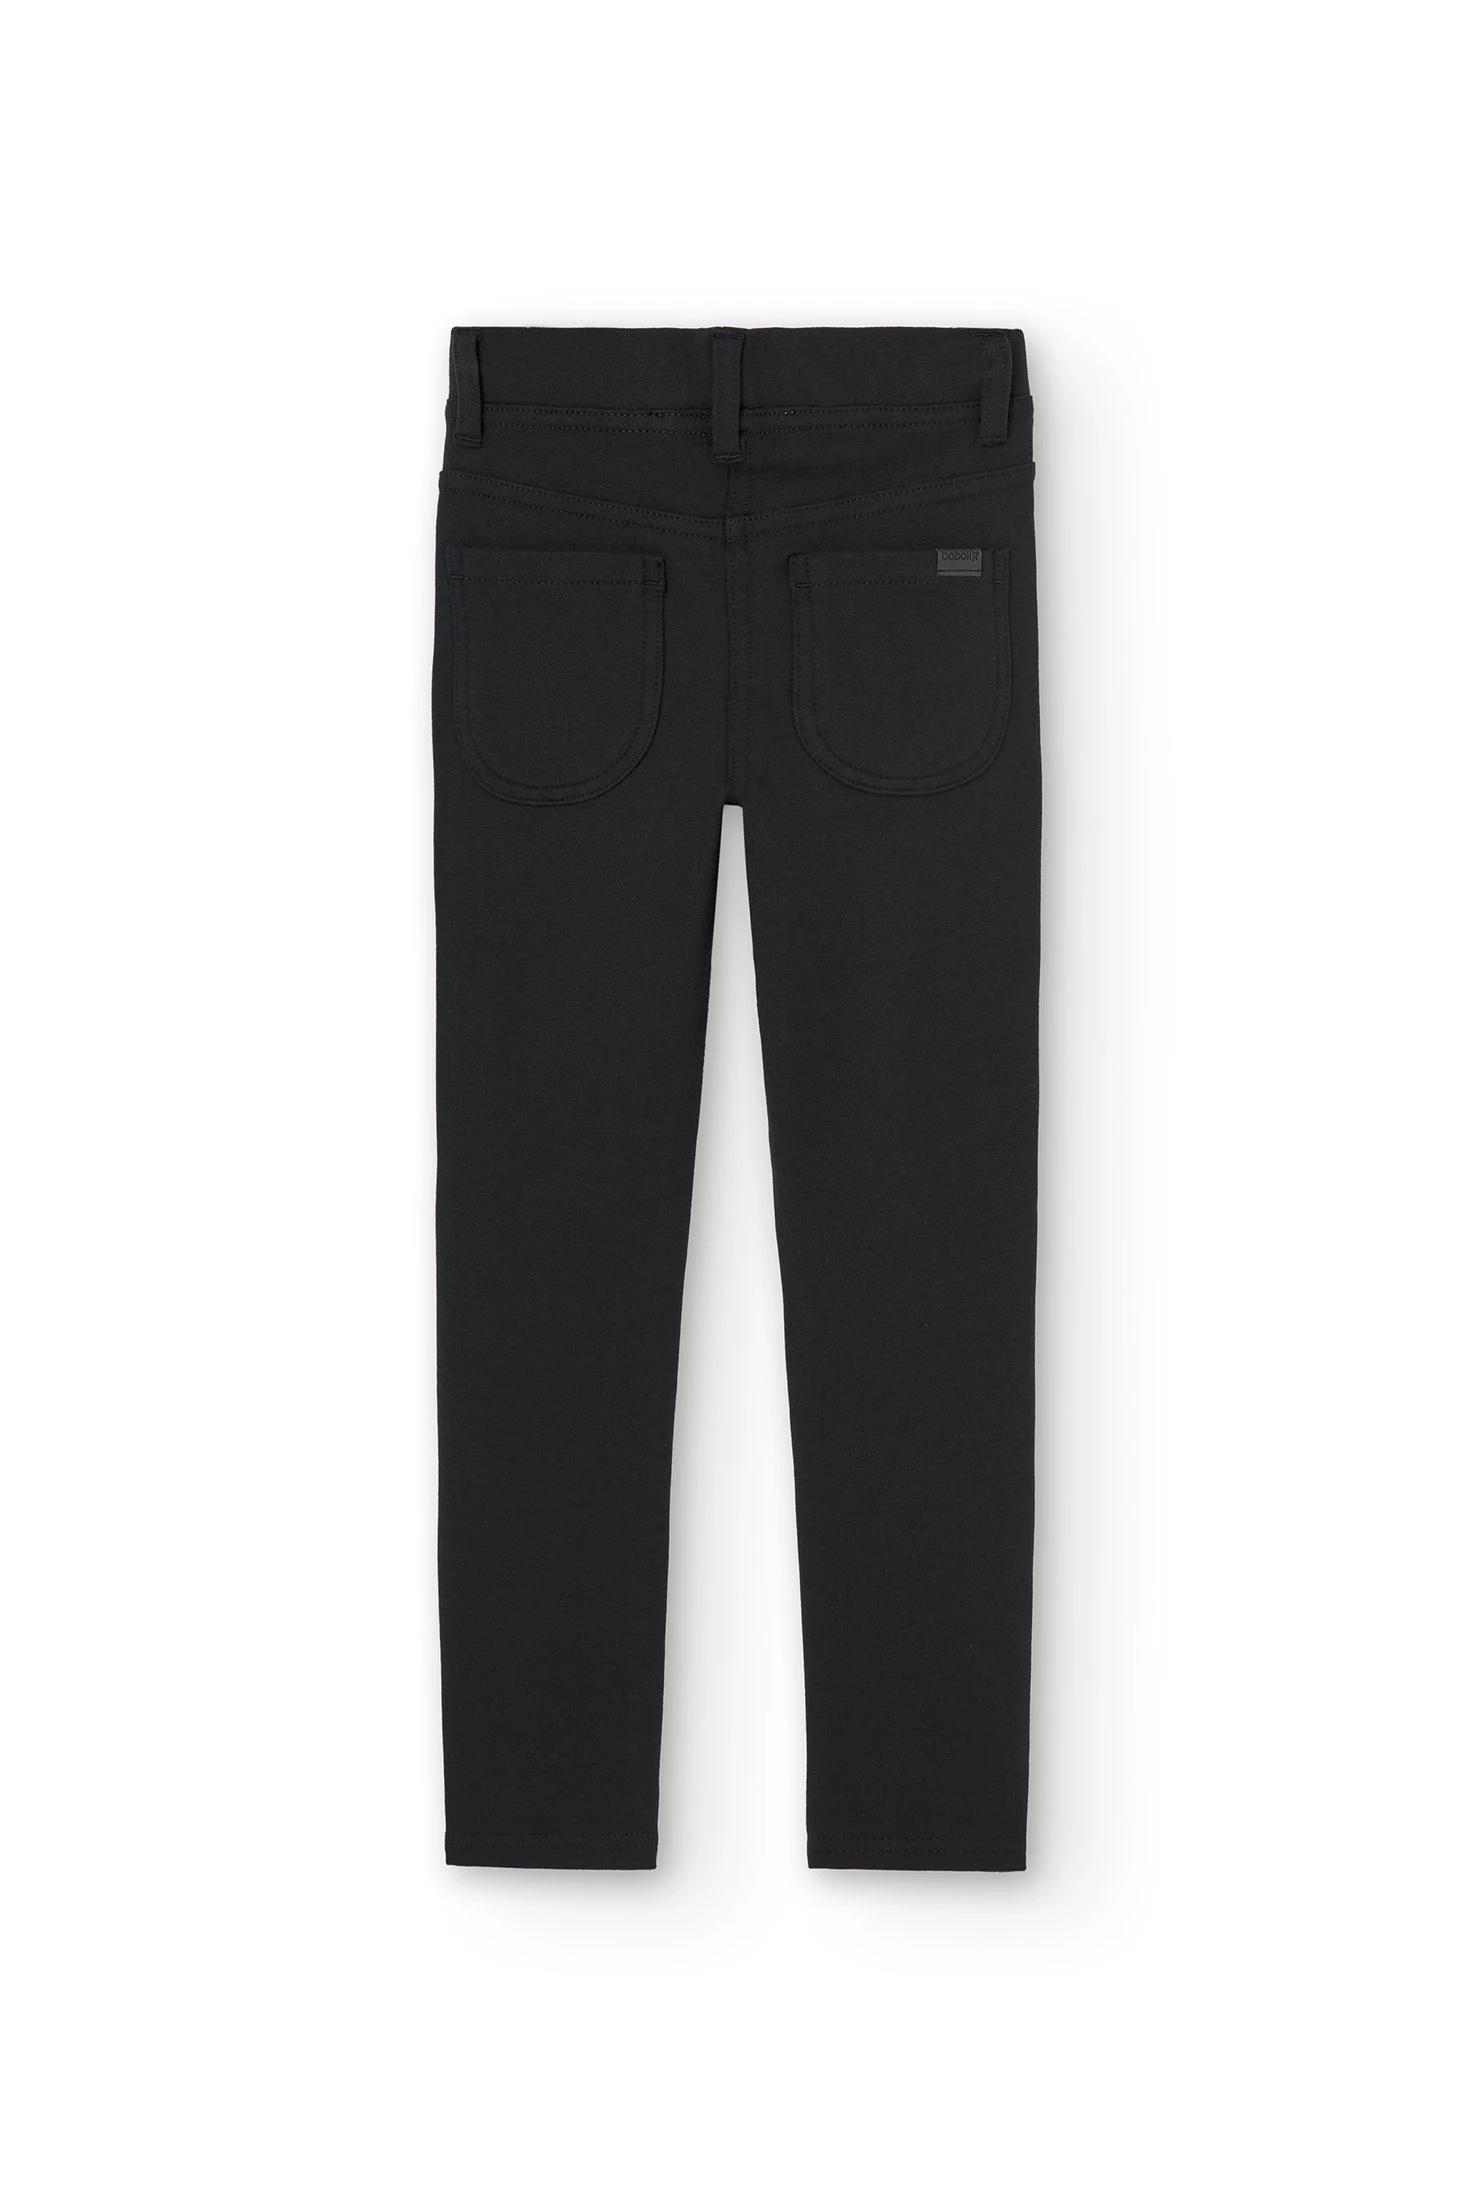 Pantalón chándal niña, felpa interior, color negro, goma cintura brillante,  de la marca Boboli